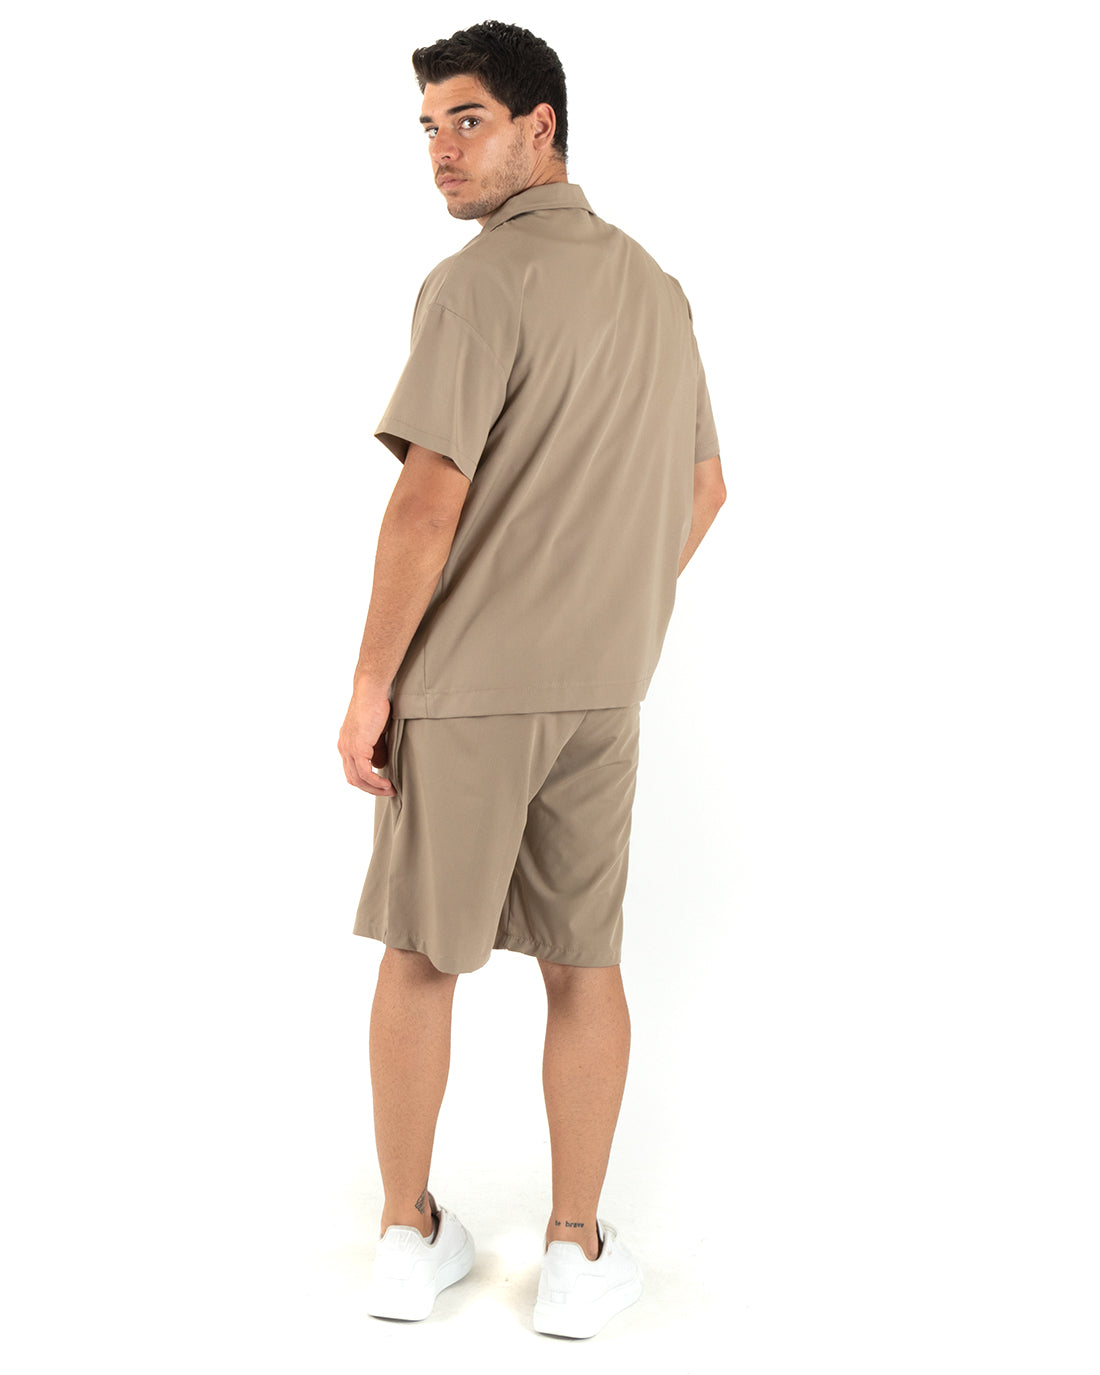 Completo Set Coordinato Uomo Viscosa Camicia Con Colletto Bermuda Outfit Camel GIOSAL-OU2375A